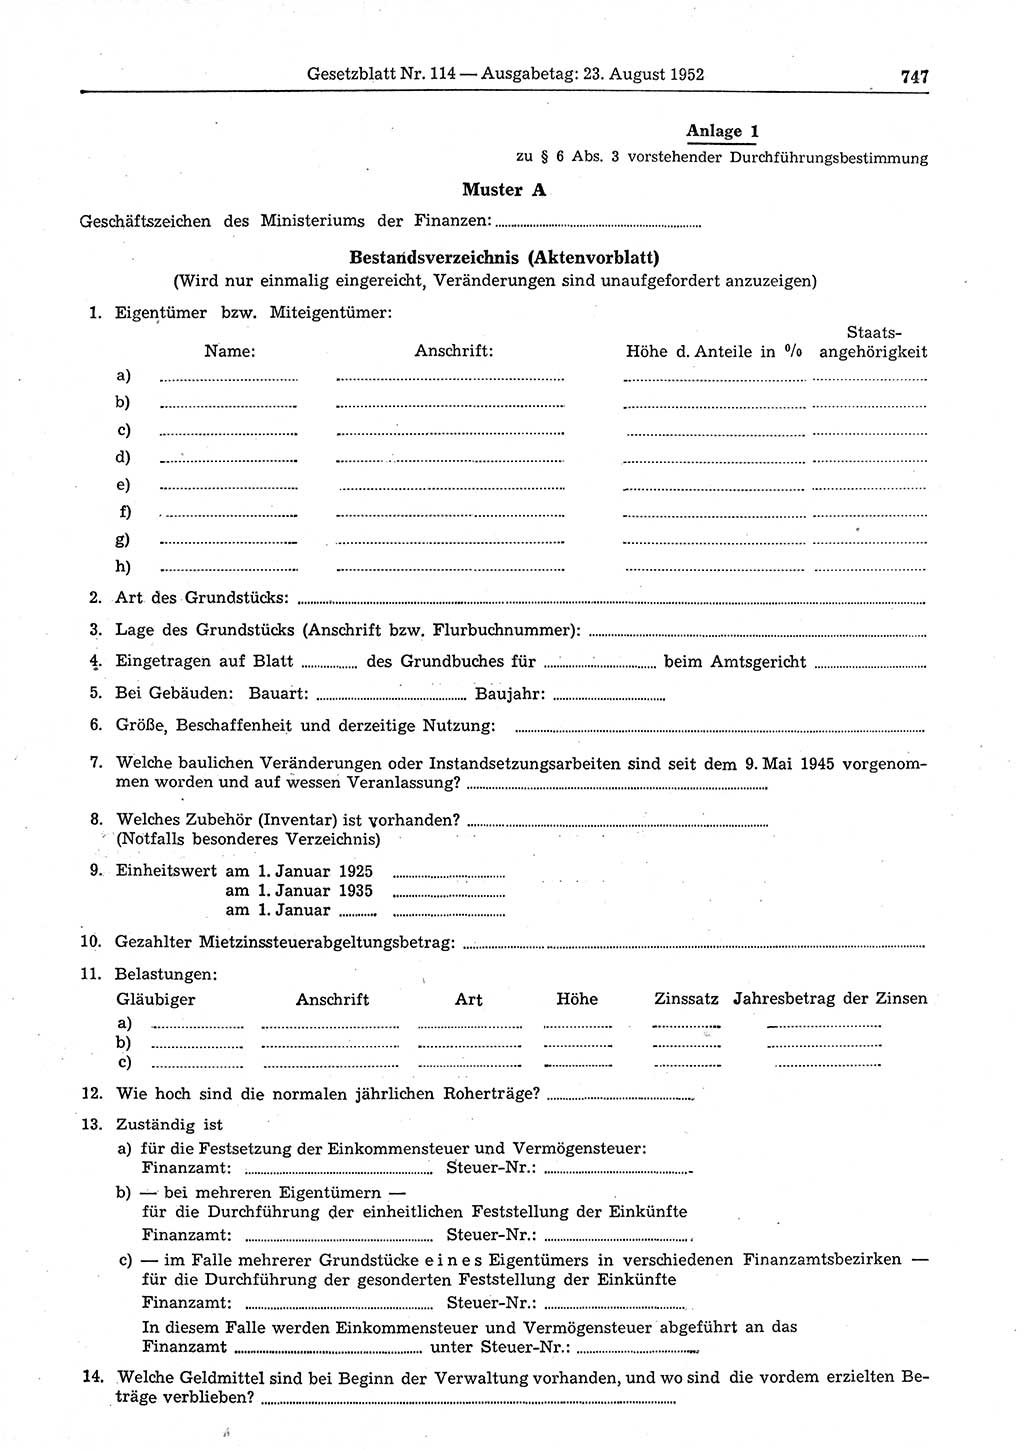 Gesetzblatt (GBl.) der Deutschen Demokratischen Republik (DDR) 1952, Seite 747 (GBl. DDR 1952, S. 747)